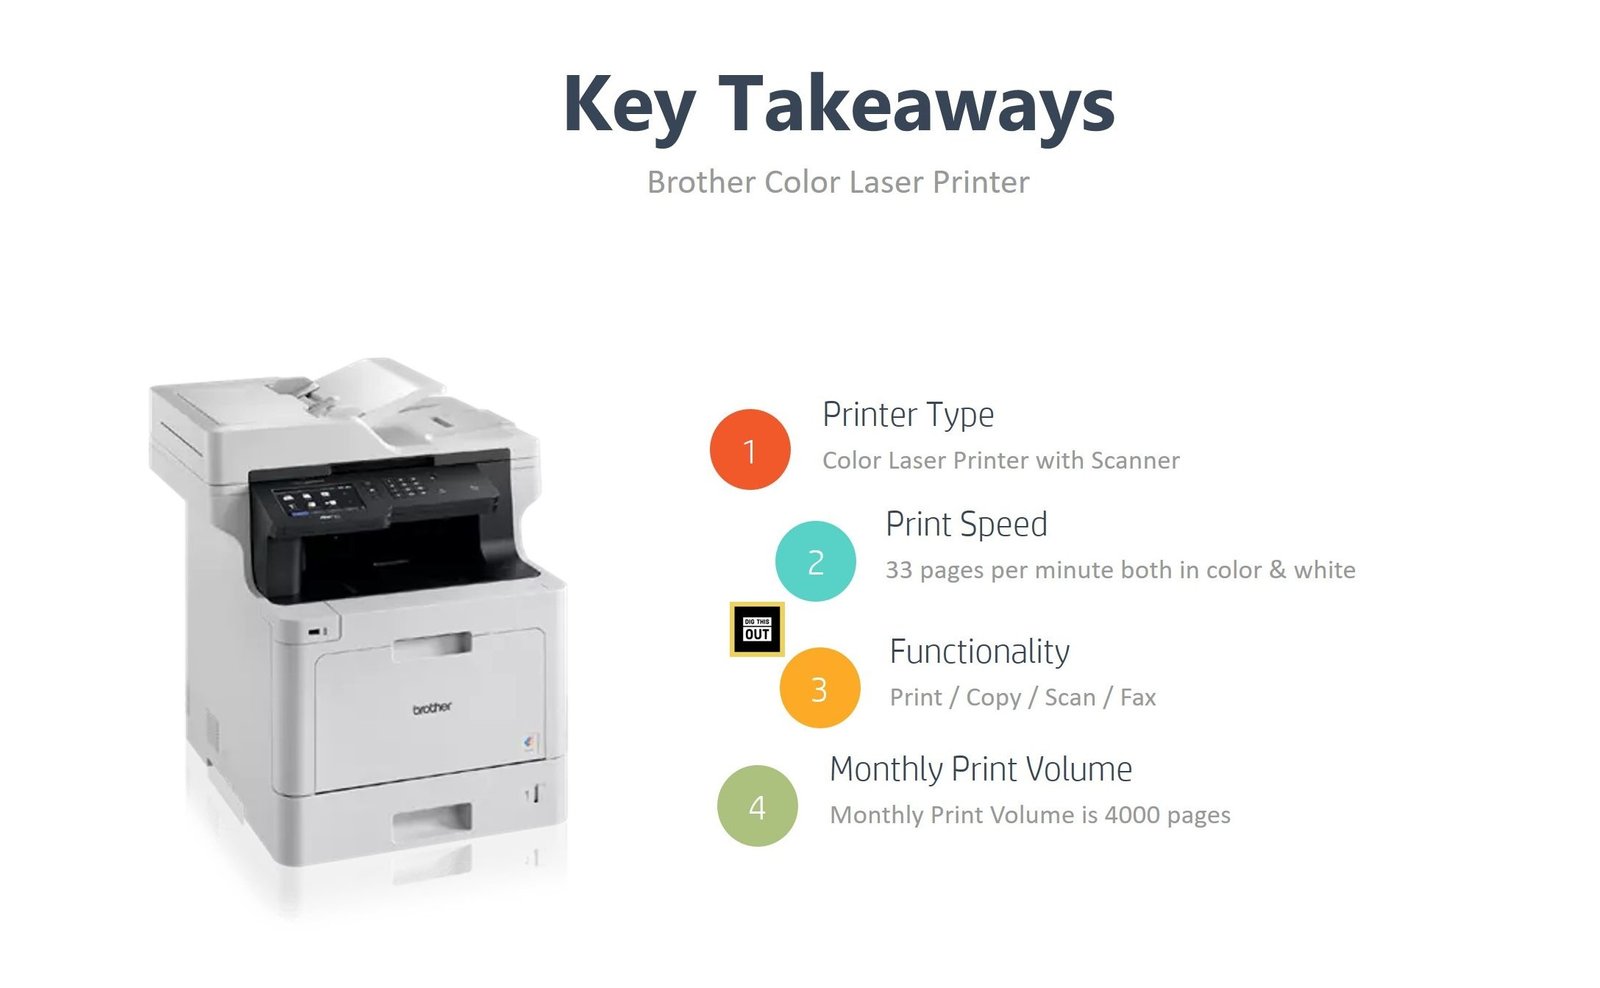 Brother Dual tray laser printer Key Takeaways